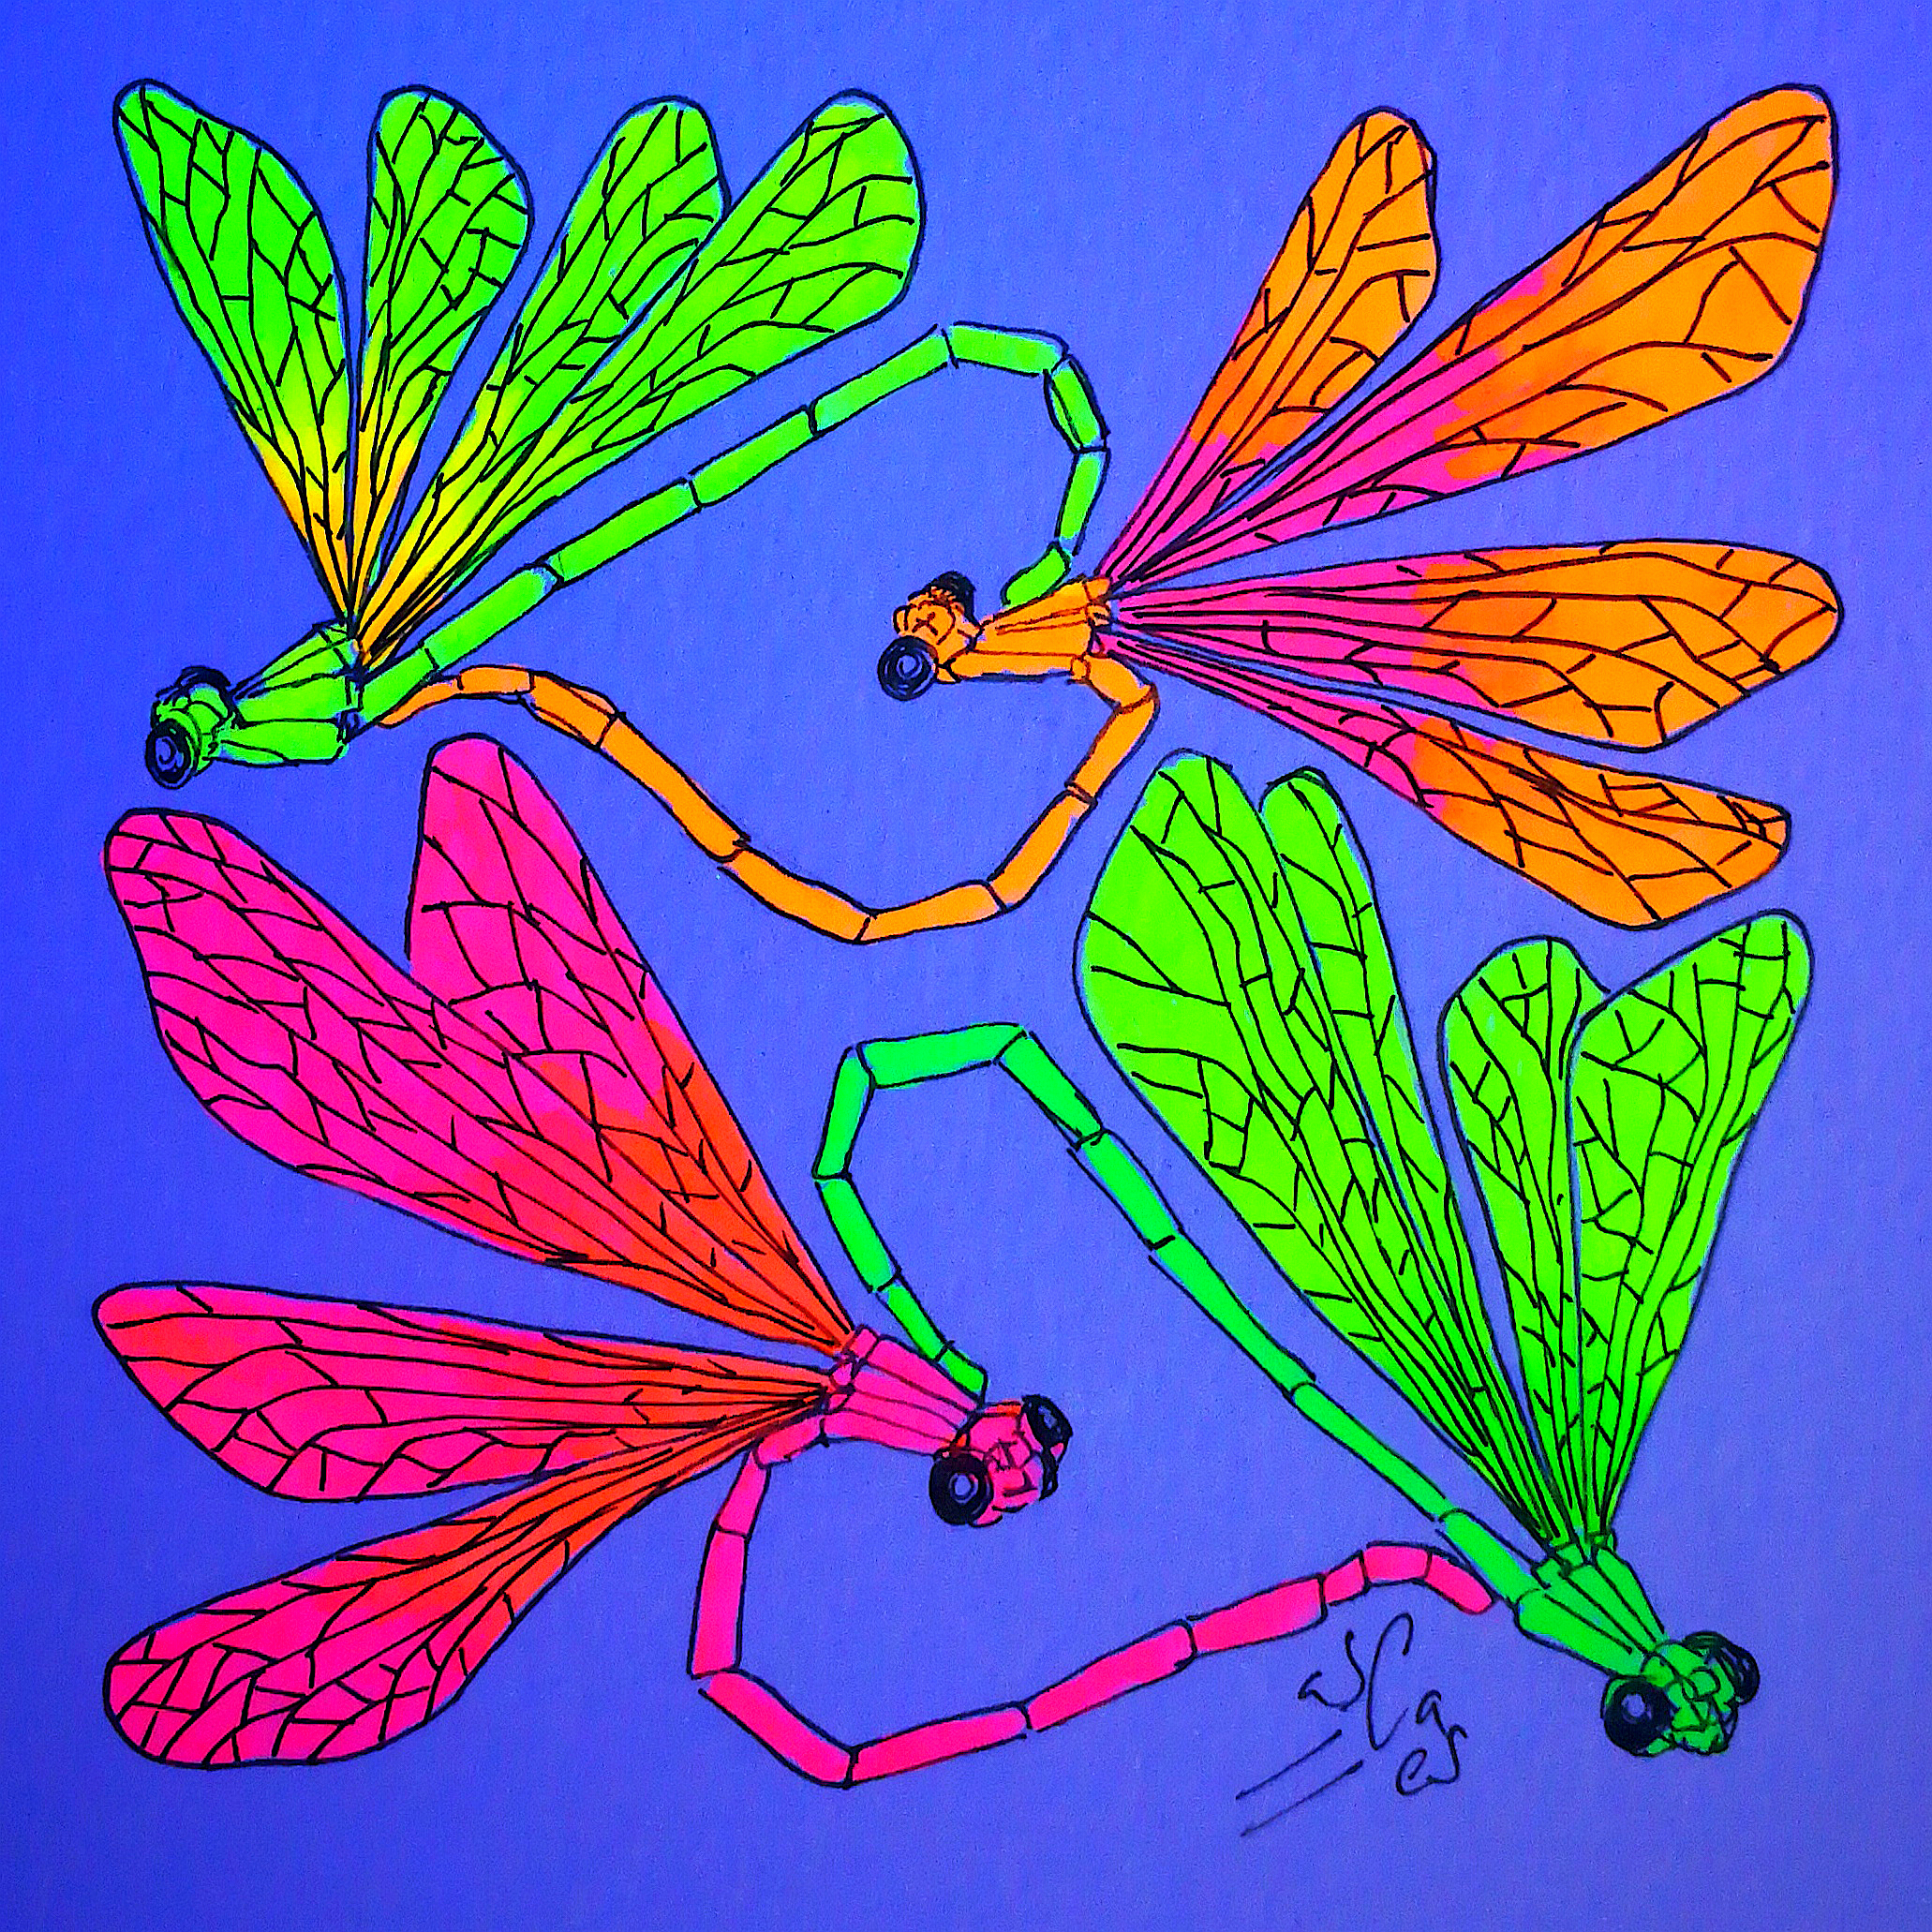 Libélulas copulando (fluo), Vicky Casellas, Ilustración fluorescente